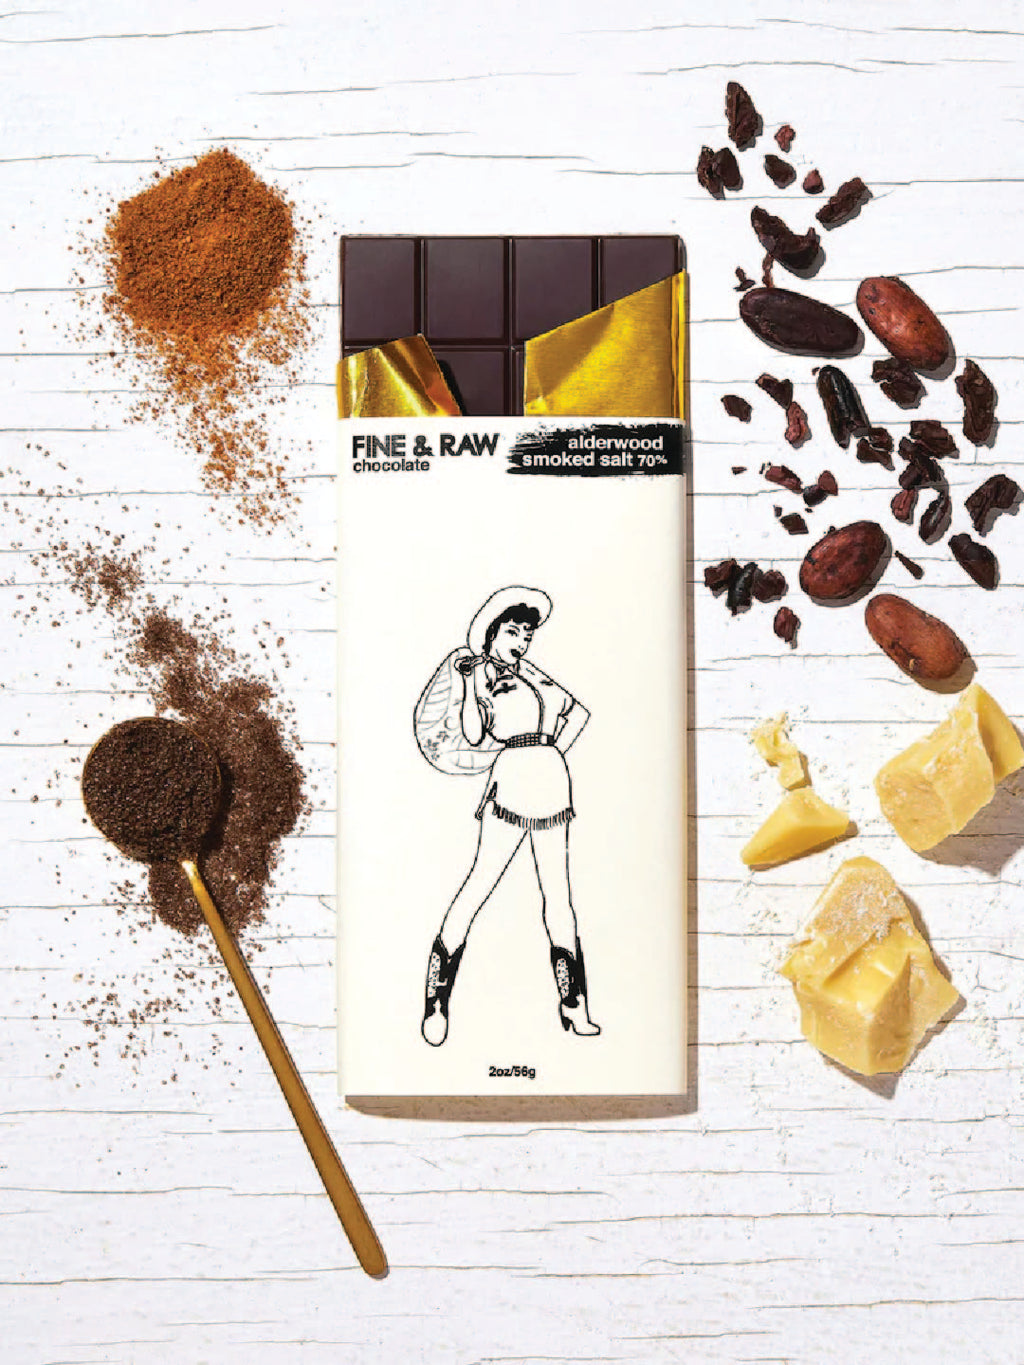 Alderwood Smoked Salt Chocolate bar - Brooklyn Bonnie Collection by FINE + RAW